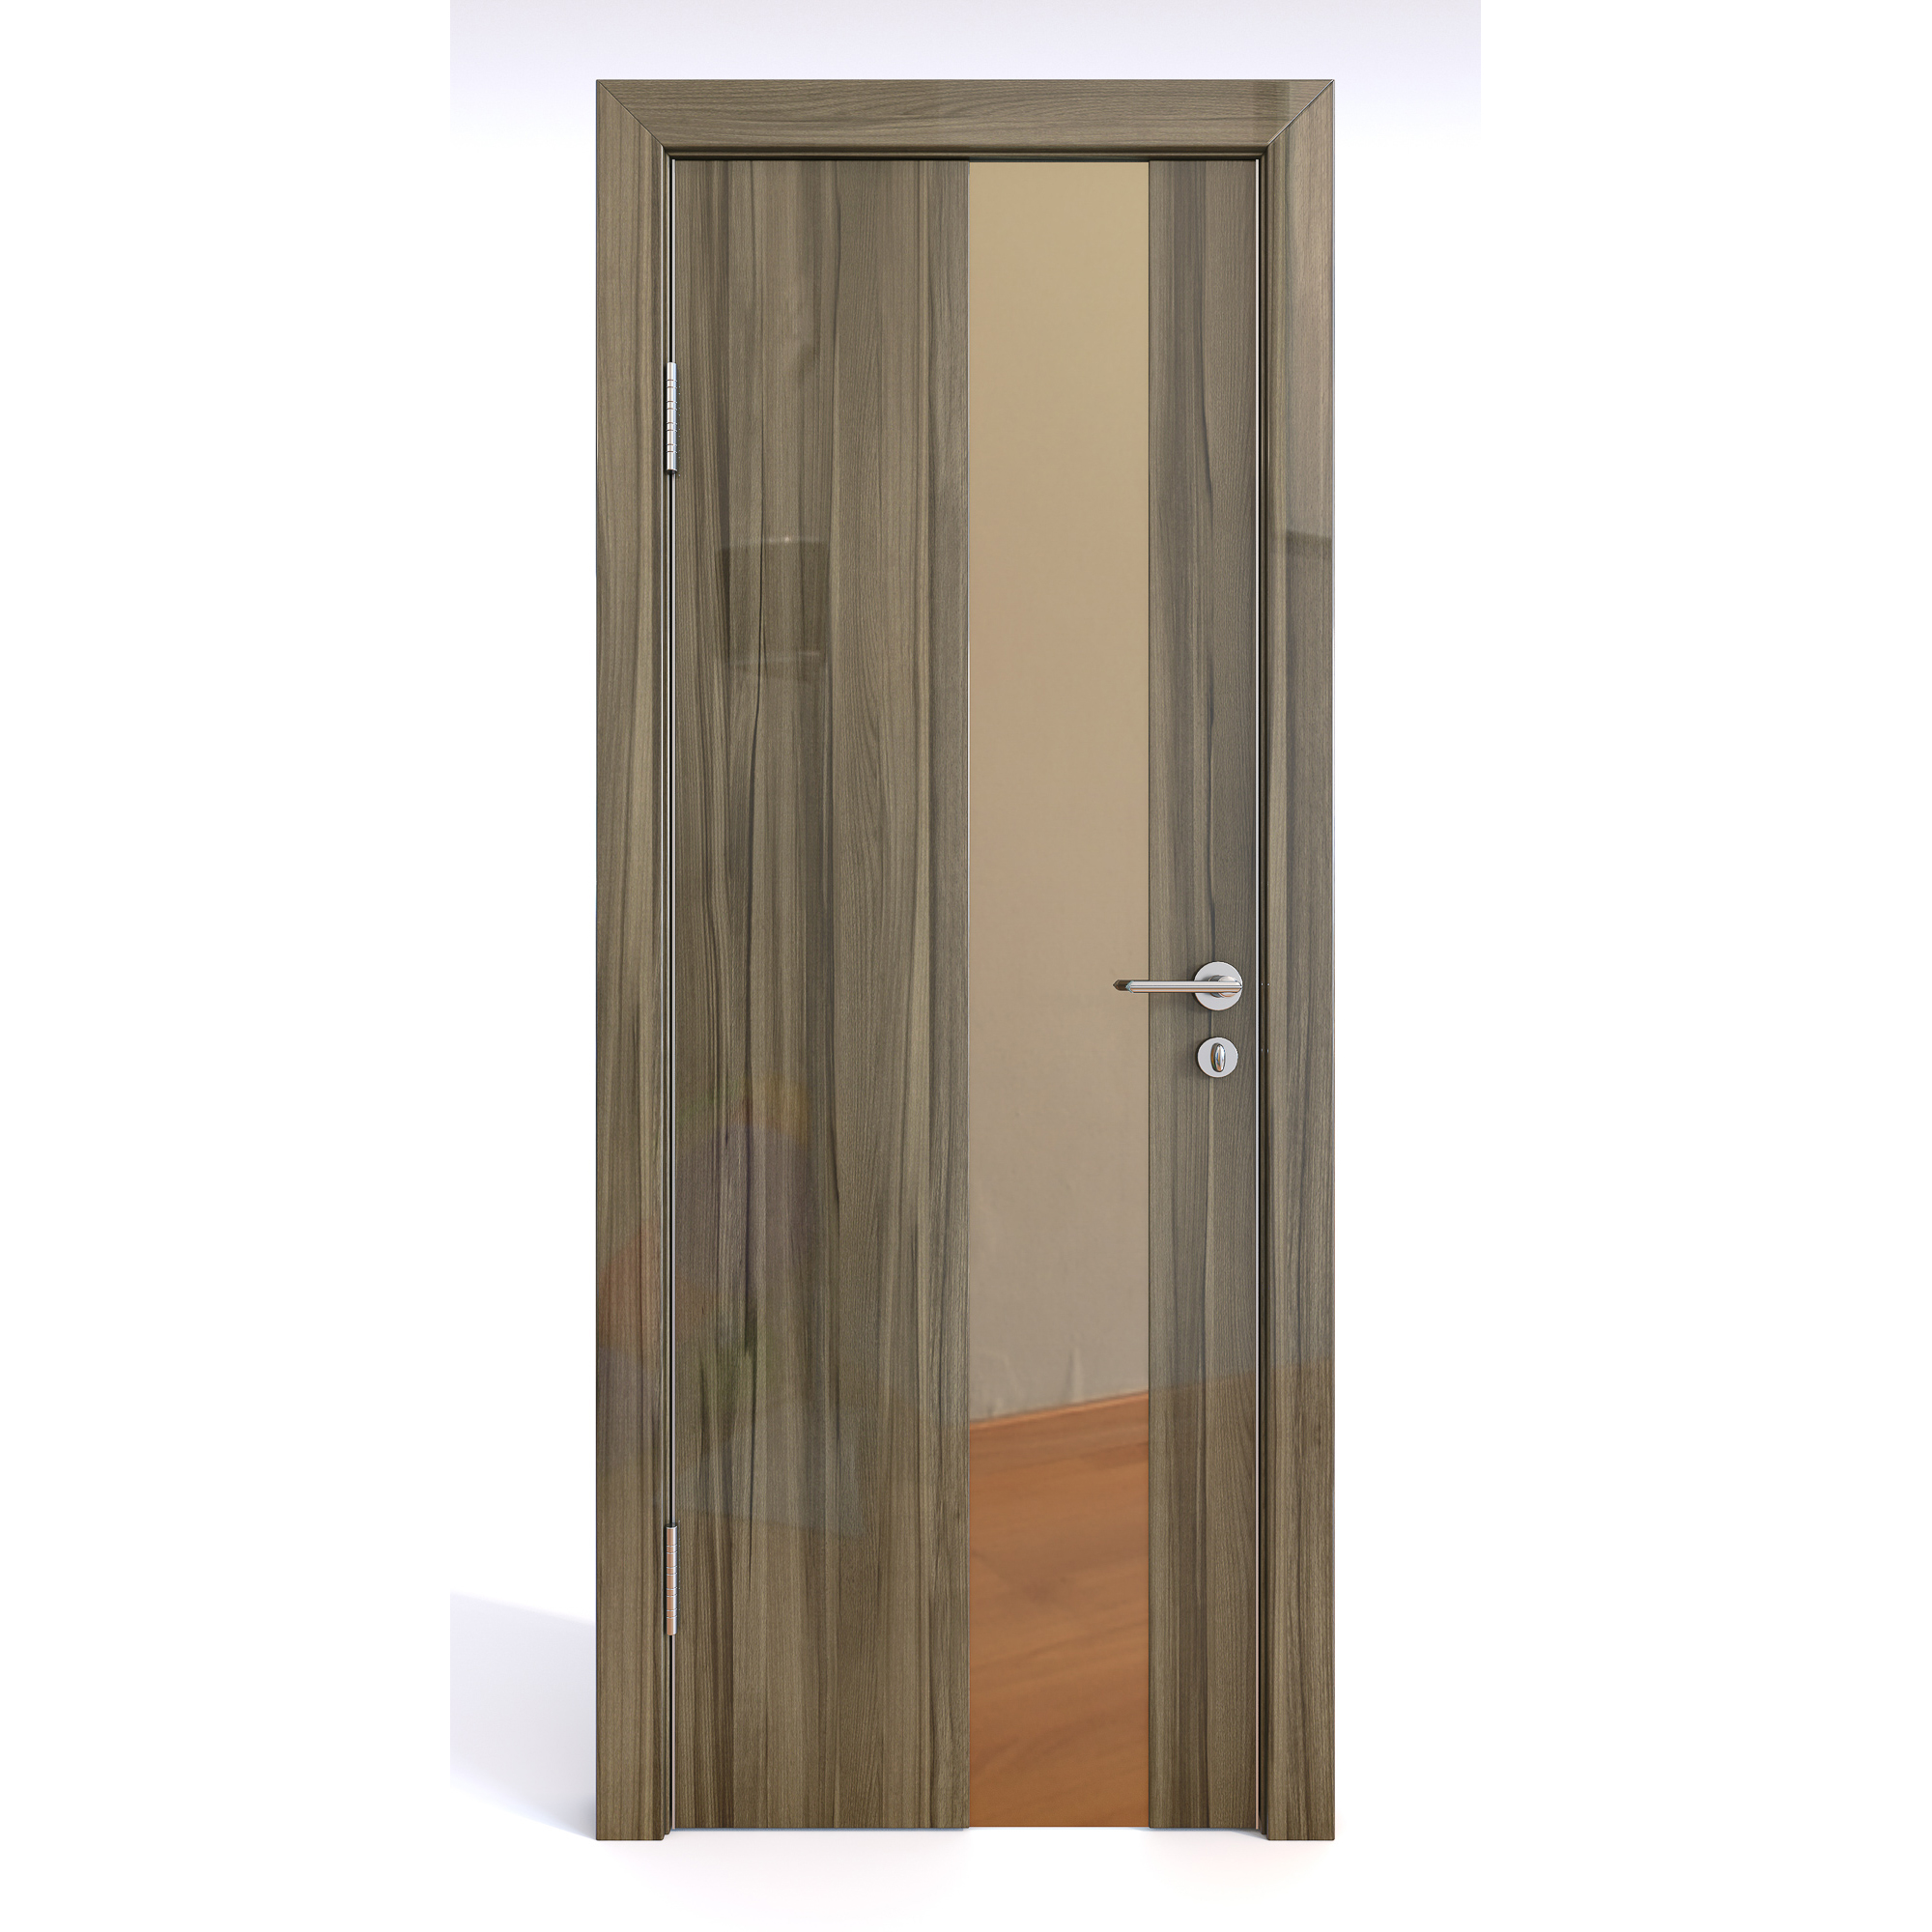 фото Межкомнатная шумоизоляционная дверь до-604/2 сосна глянец/бронза 200х80 дверная линия